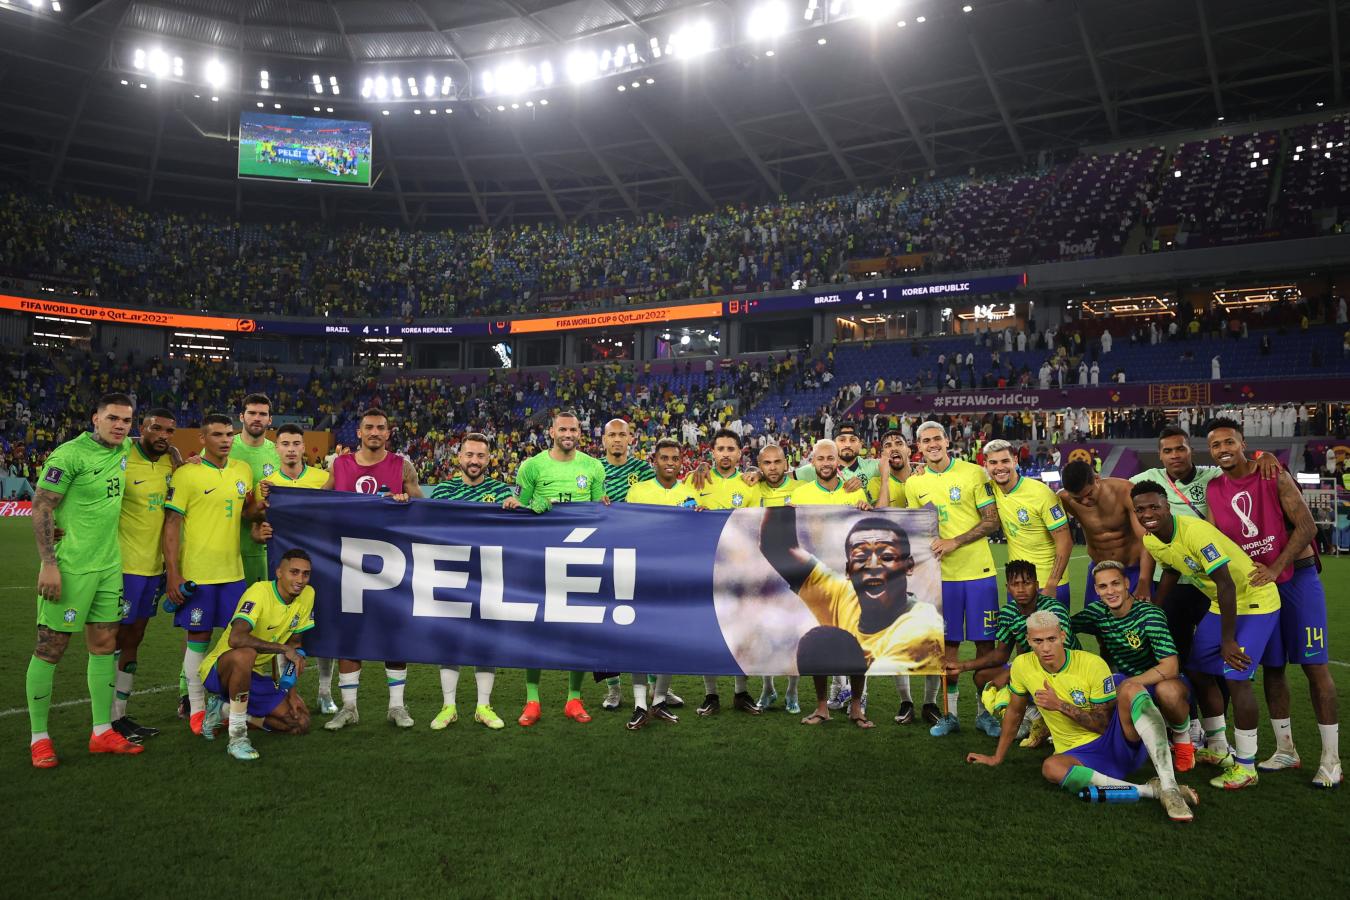 Imagen Todo Brasil le dedicó el triunfo a su máximo ídolo: Pelé. Foto: FIFA